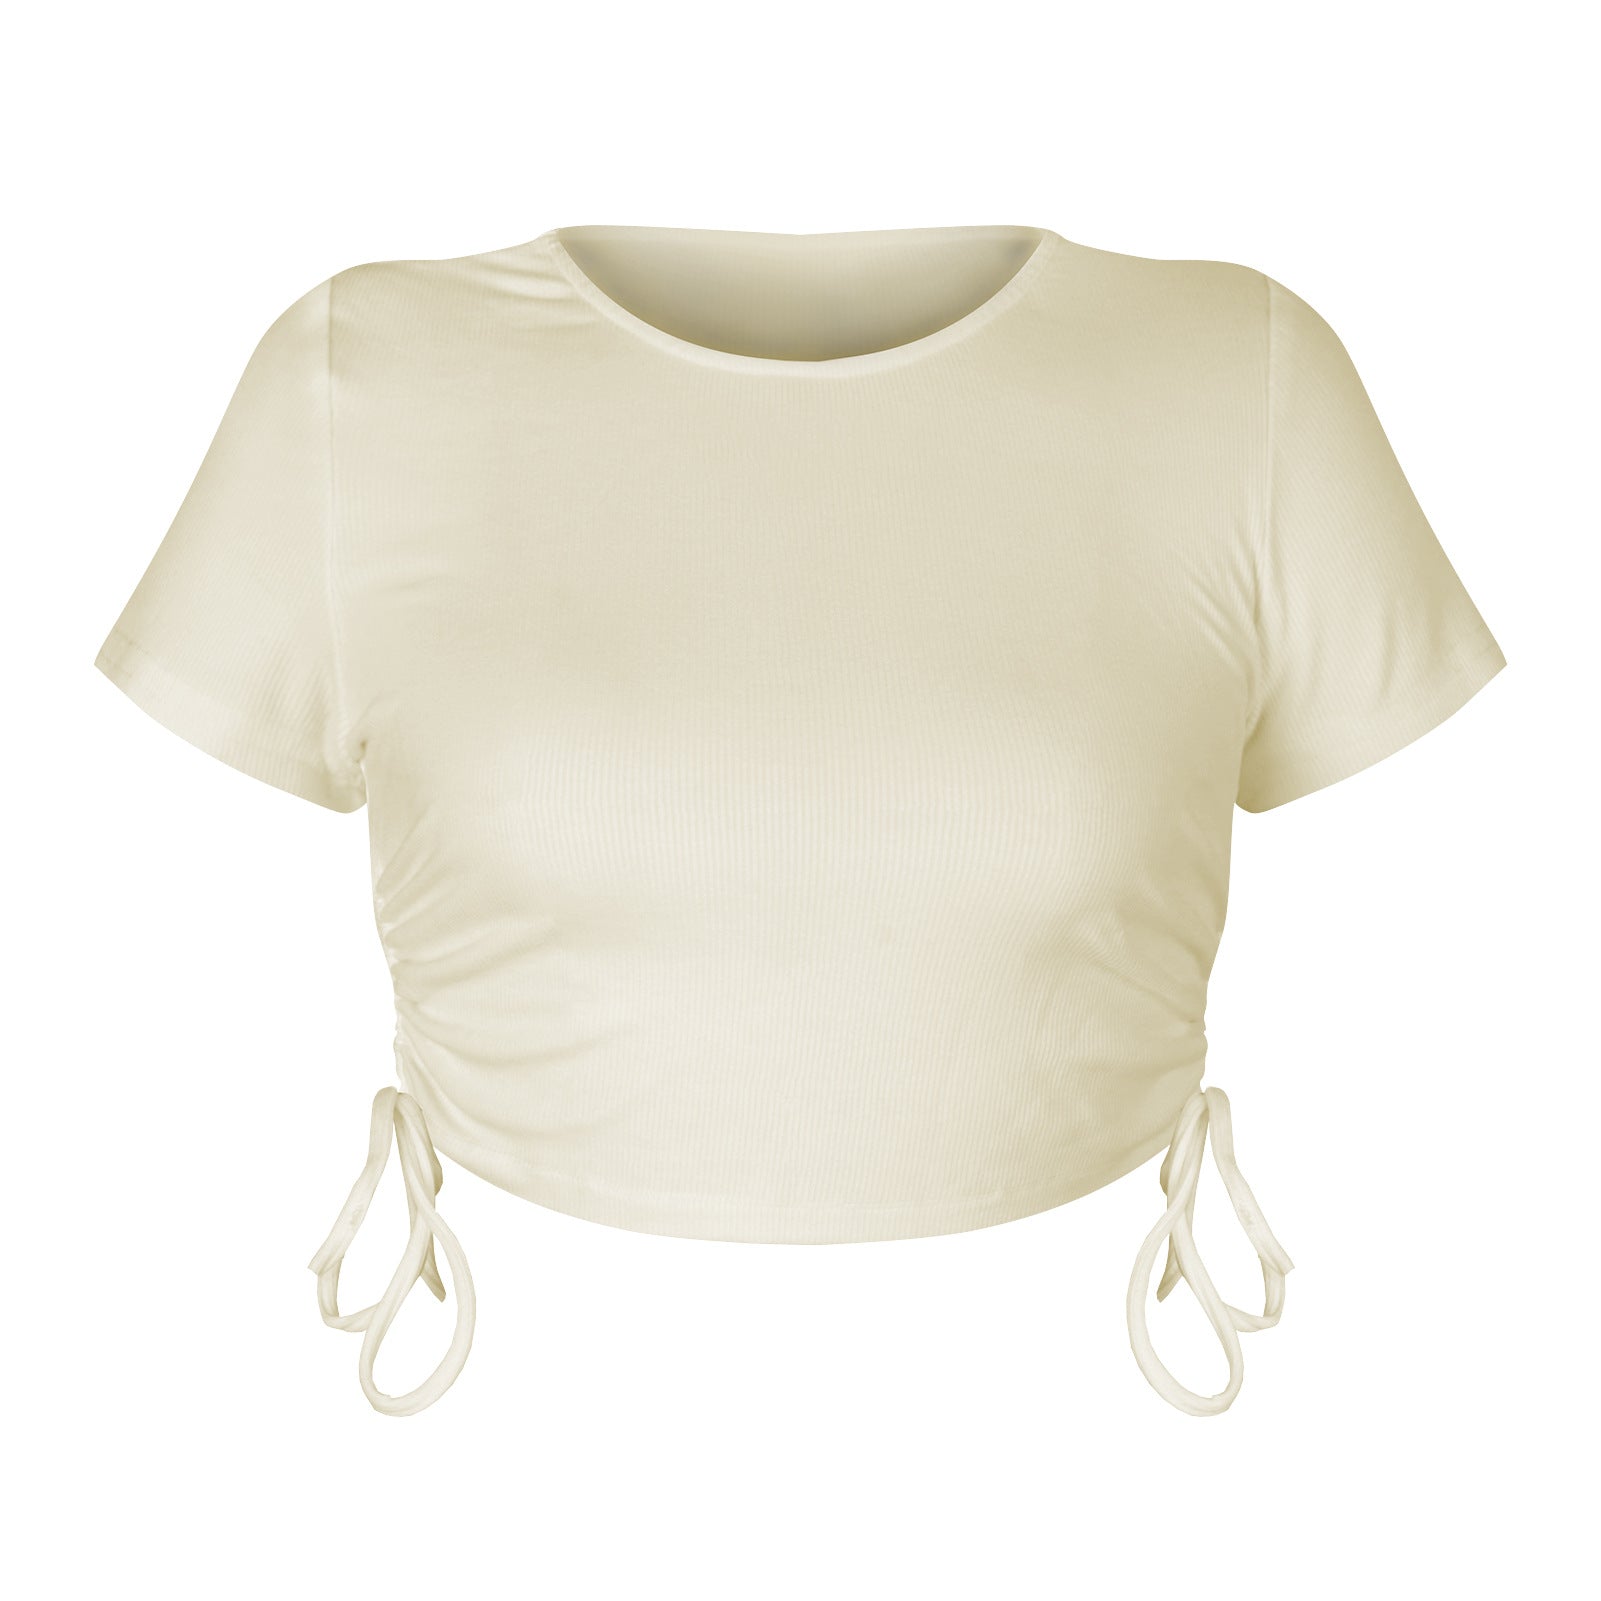 Women Round Neck Short Sleeve T-Shirt Crop Top With Drawstring GSTD